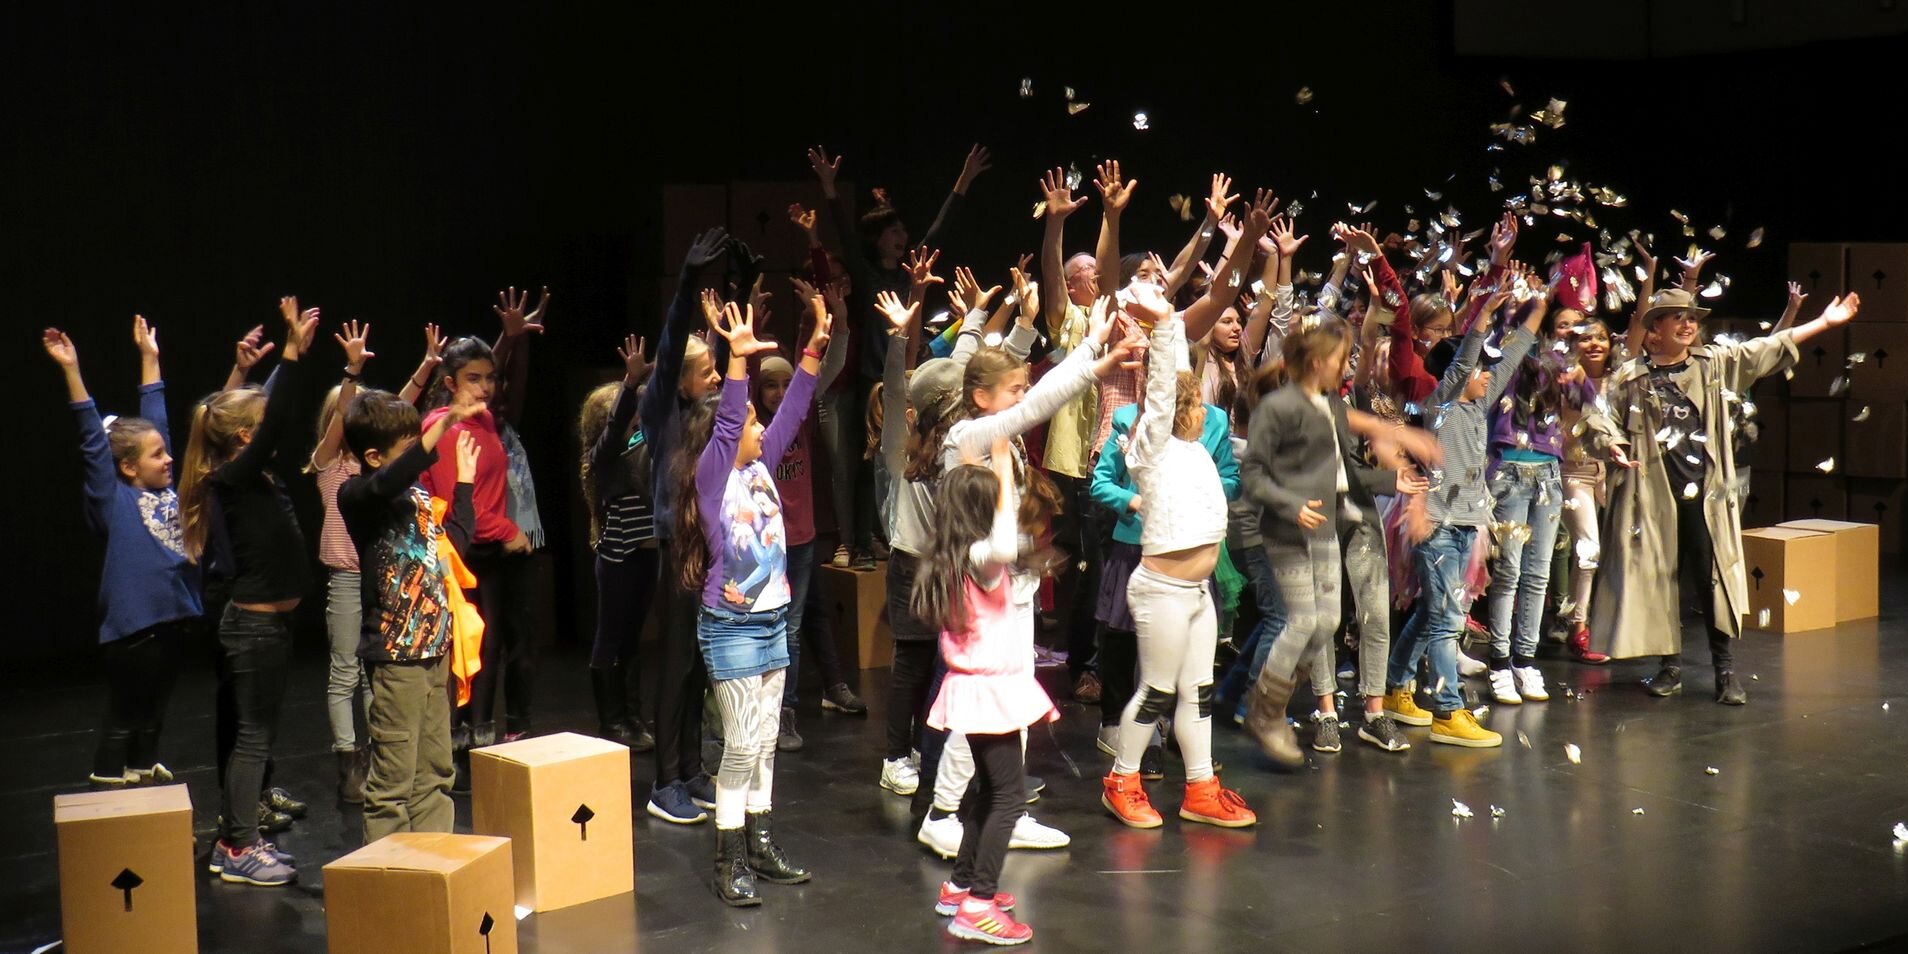 Kinder werfen auf einer Bühne Konfetti und strecken ihre Hände in die Höhe.